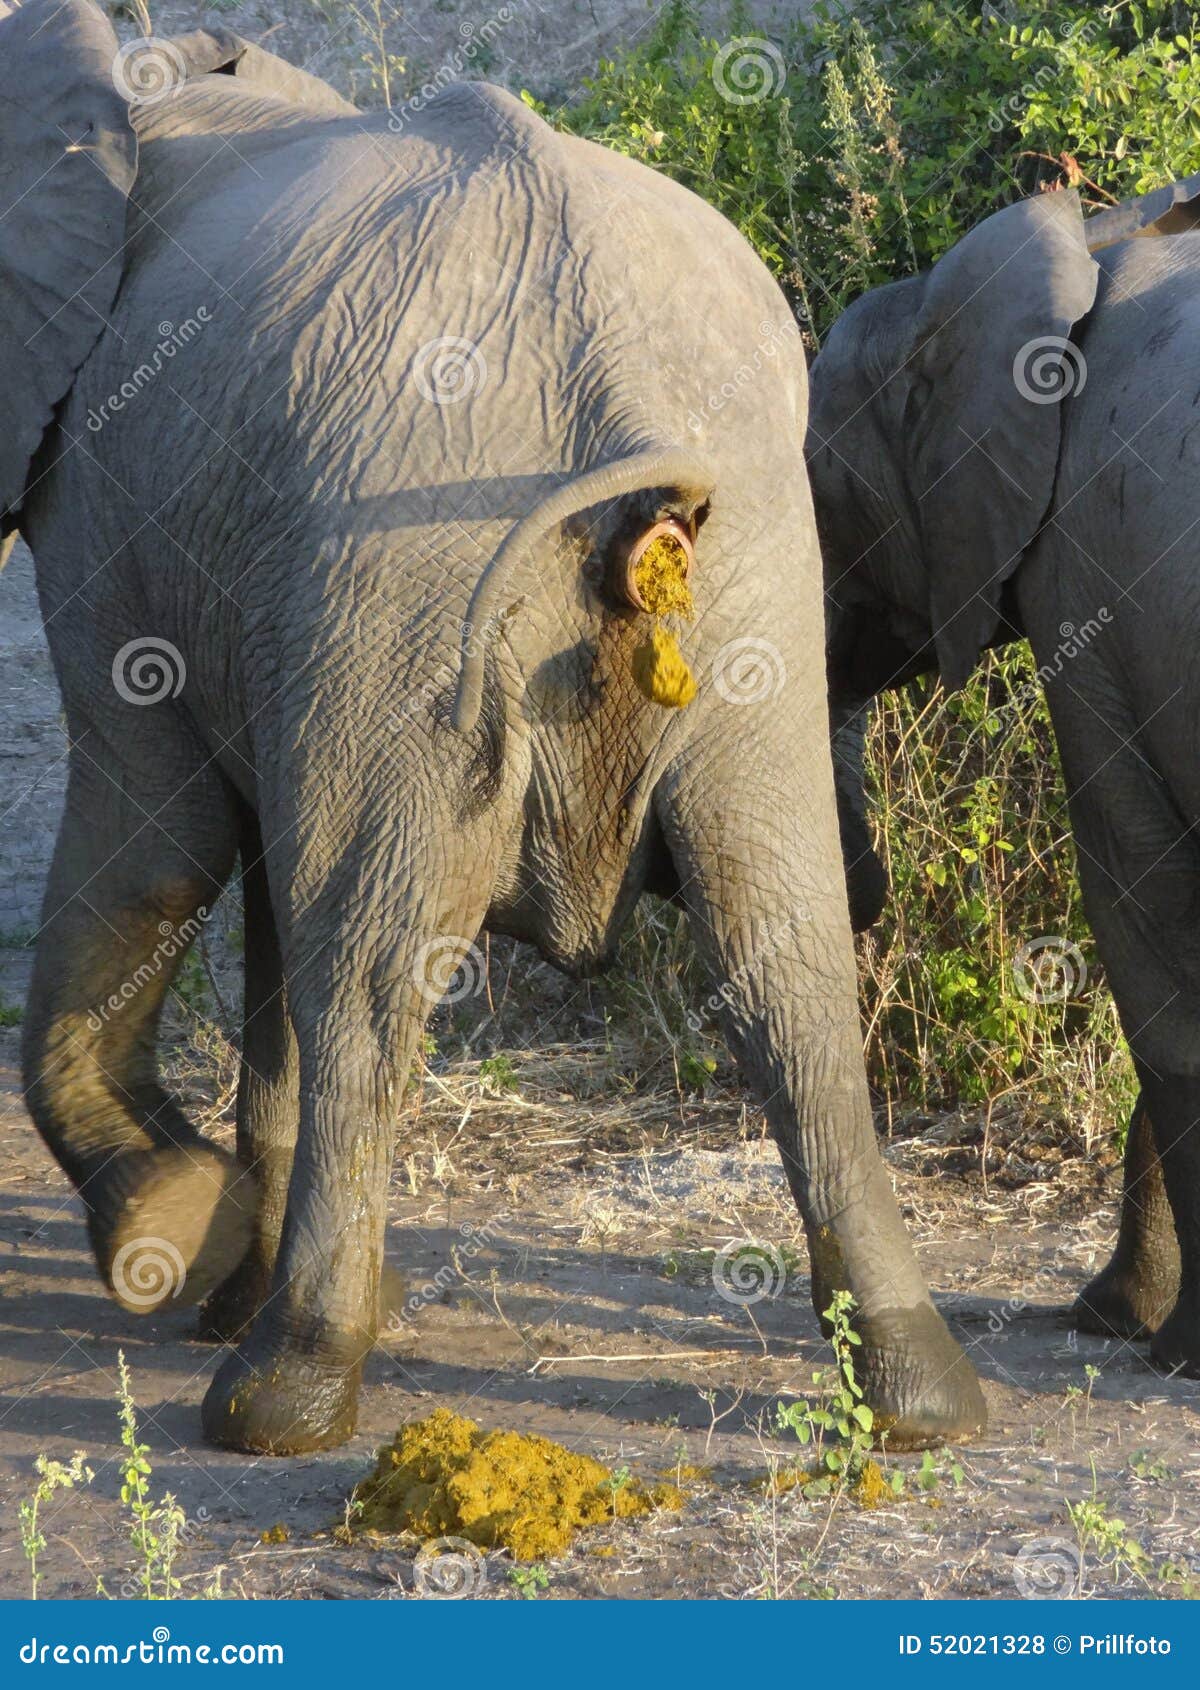 голова человека в жопе у слона фото 25